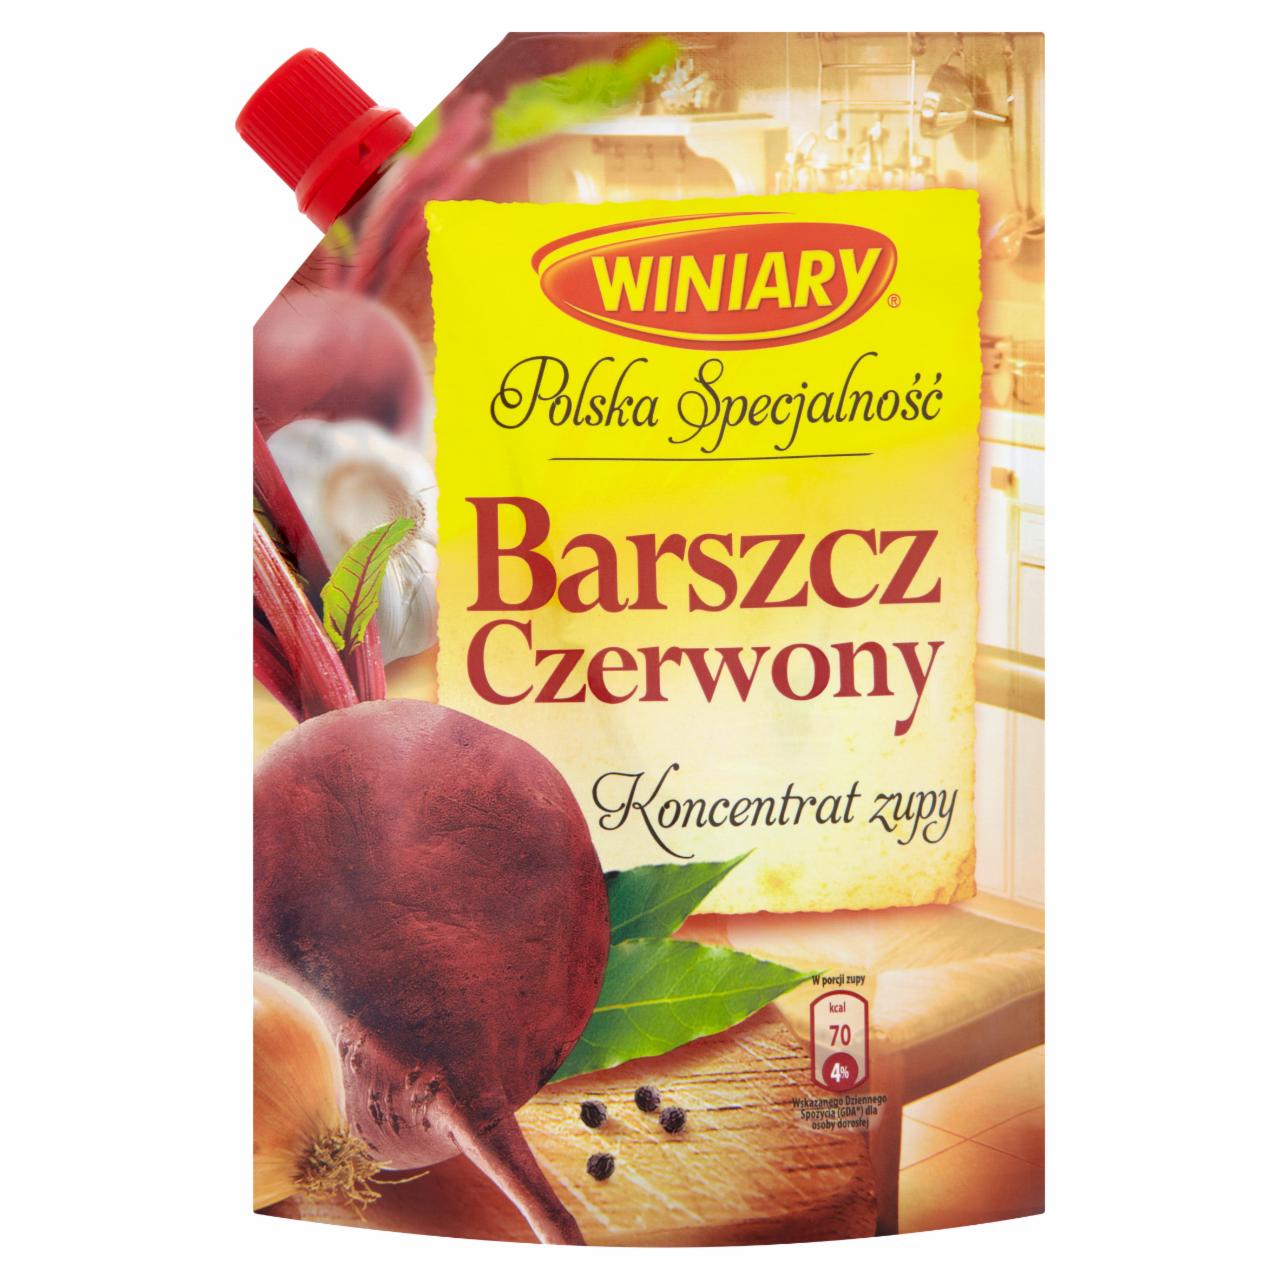 Zdjęcia - Winiary Polska Specjalność Barszcz czerwony Koncentrat zupy 155 g